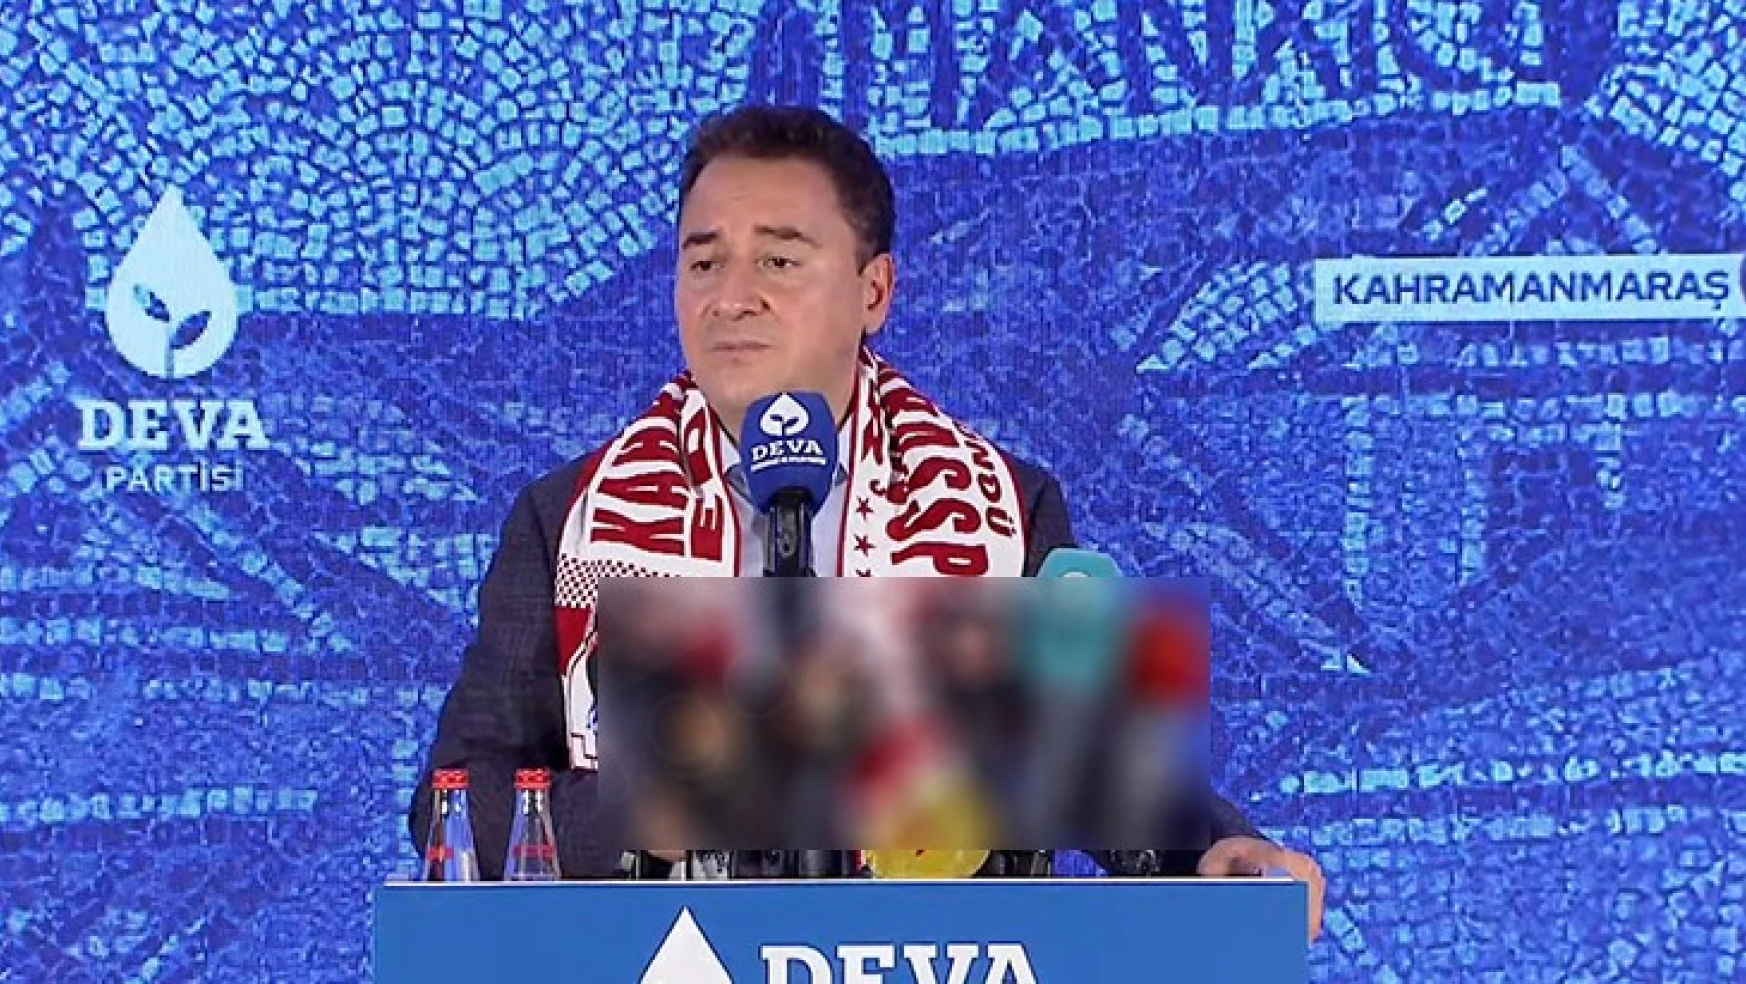 Deva Partisi Genel Başkanı Ali Babacan, Kahramanmaraş'ta